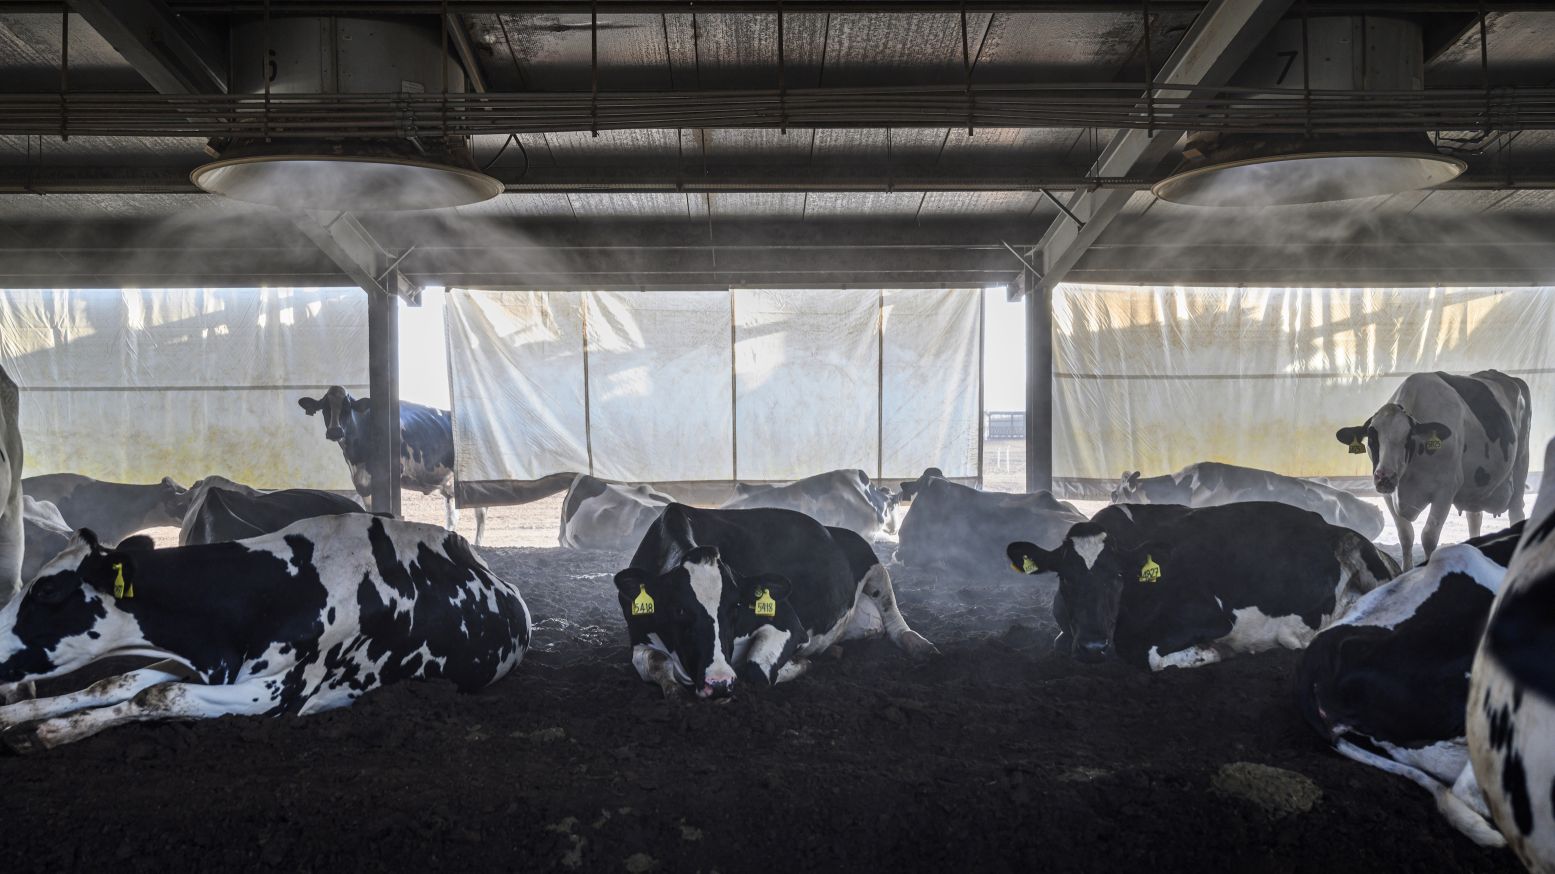 Megastallen vol koeien. Foto: Kadir van Lohuizen / NOOR Images